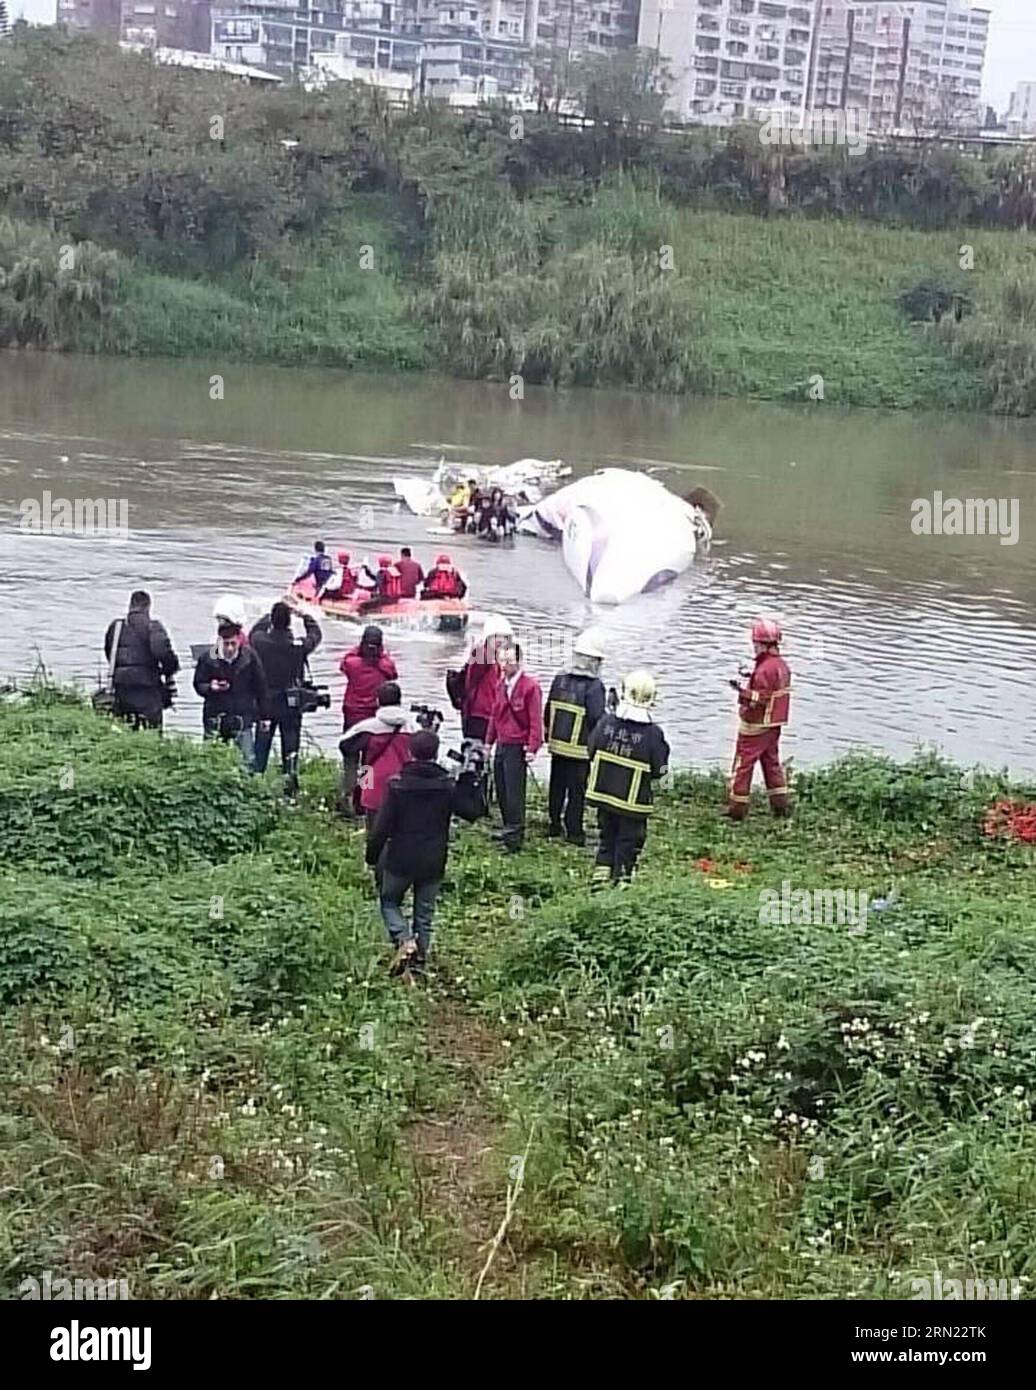 (150204) -- Taipei, 4 febbraio 2015 () -- i soccorritori lavorano sul luogo dell'incidente aereo a Taipei, Taiwan, Cina sudorientale, 4 febbraio 2015. Un aereo della Taiwan TransAsia Airways è sceso in un fiume di Taipei mercoledì, con più di 50 persone a bordo, ha confermato le autorità dell'aviazione civile di Taiwan. Il contatto con il volo ATR-72, programmato da Taipei a Kinmen, si è perso intorno alle 11 del mattino, poi l'aereo è stato trovato nel fiume dal ponte Nanhu. () (mt) CINA-TAIPEI-INCIDENTE AEREO (CN) Xinhua PUBLICATIONxNOTxINxCHN Taipei 4 febbraio 2015 lavoro di salvataggio PRESSO il sito dell'incidente aereo a Taipei S Foto Stock